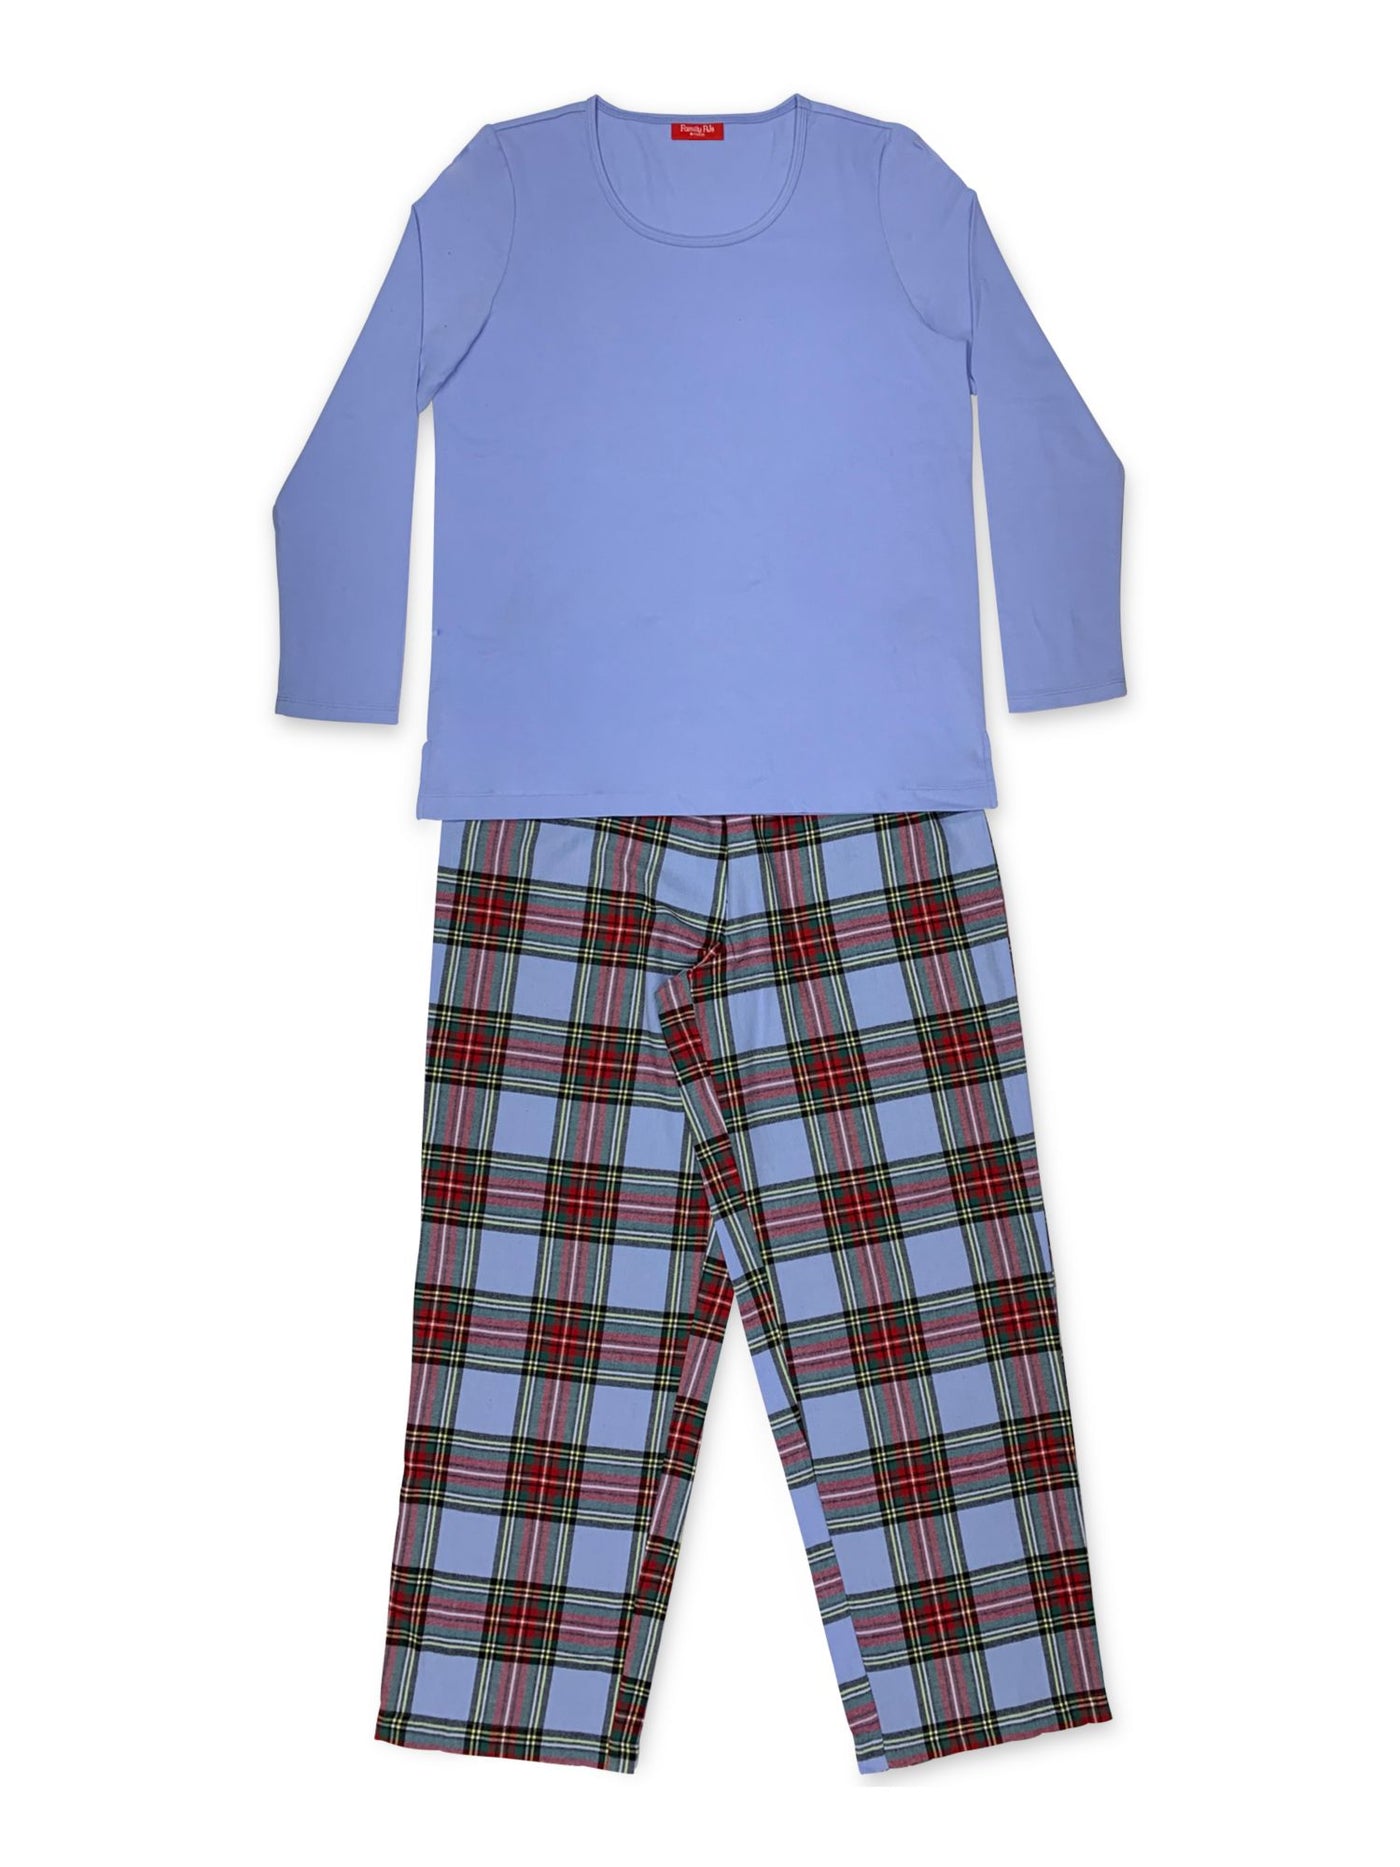 FAMILY PJs Intimates Light Blue Set Plaid Pajamas S